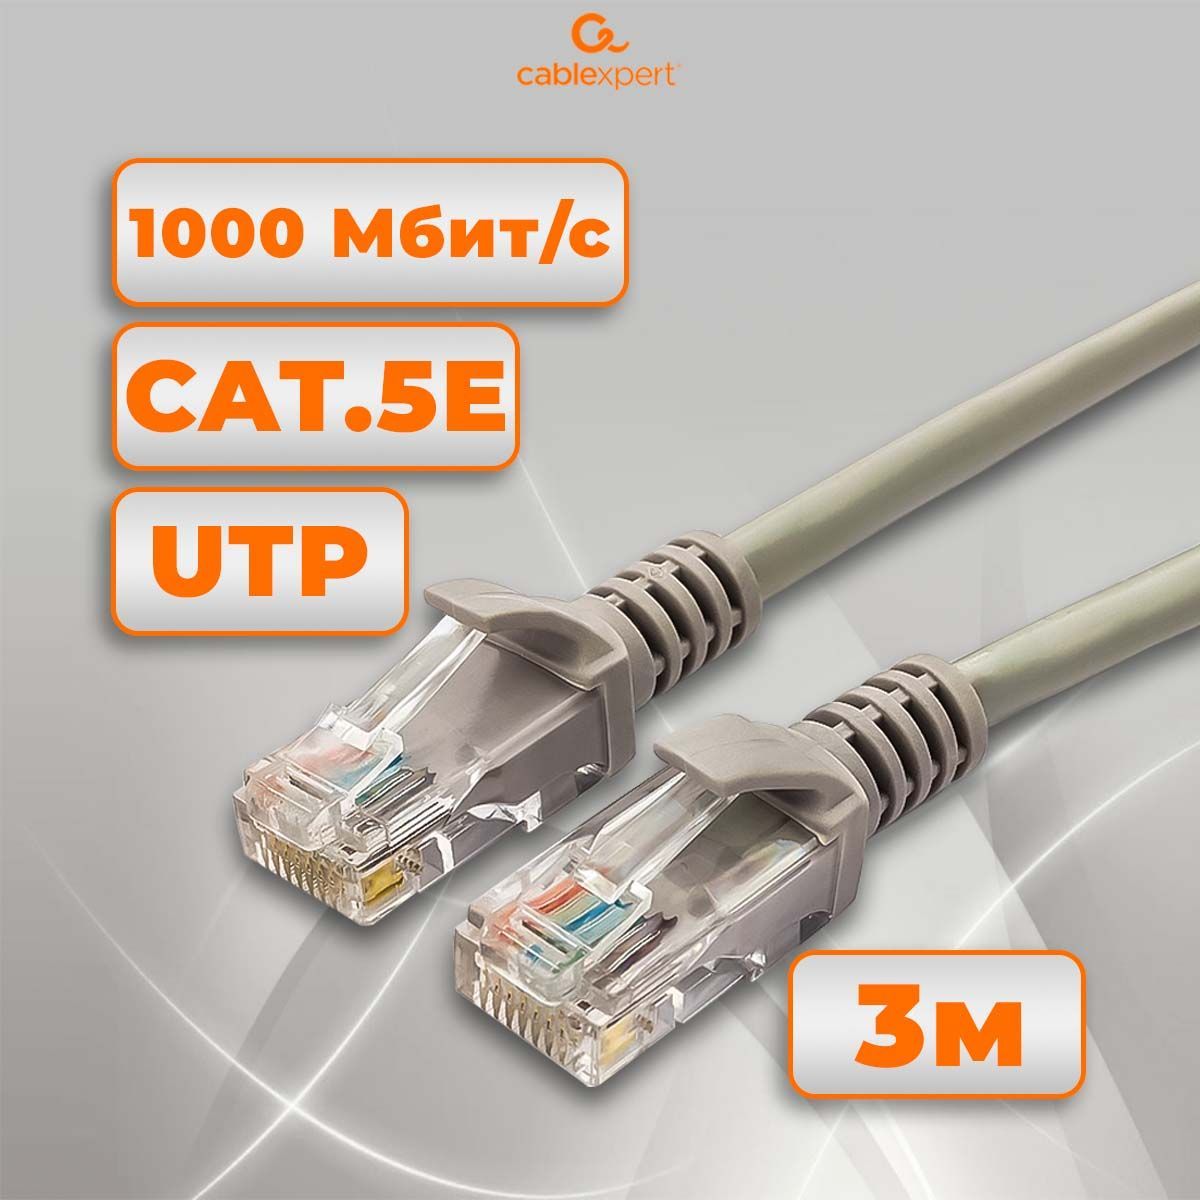 CablexpertКабельдляинтернет-соединенияRJ-45/RJ-45,серый